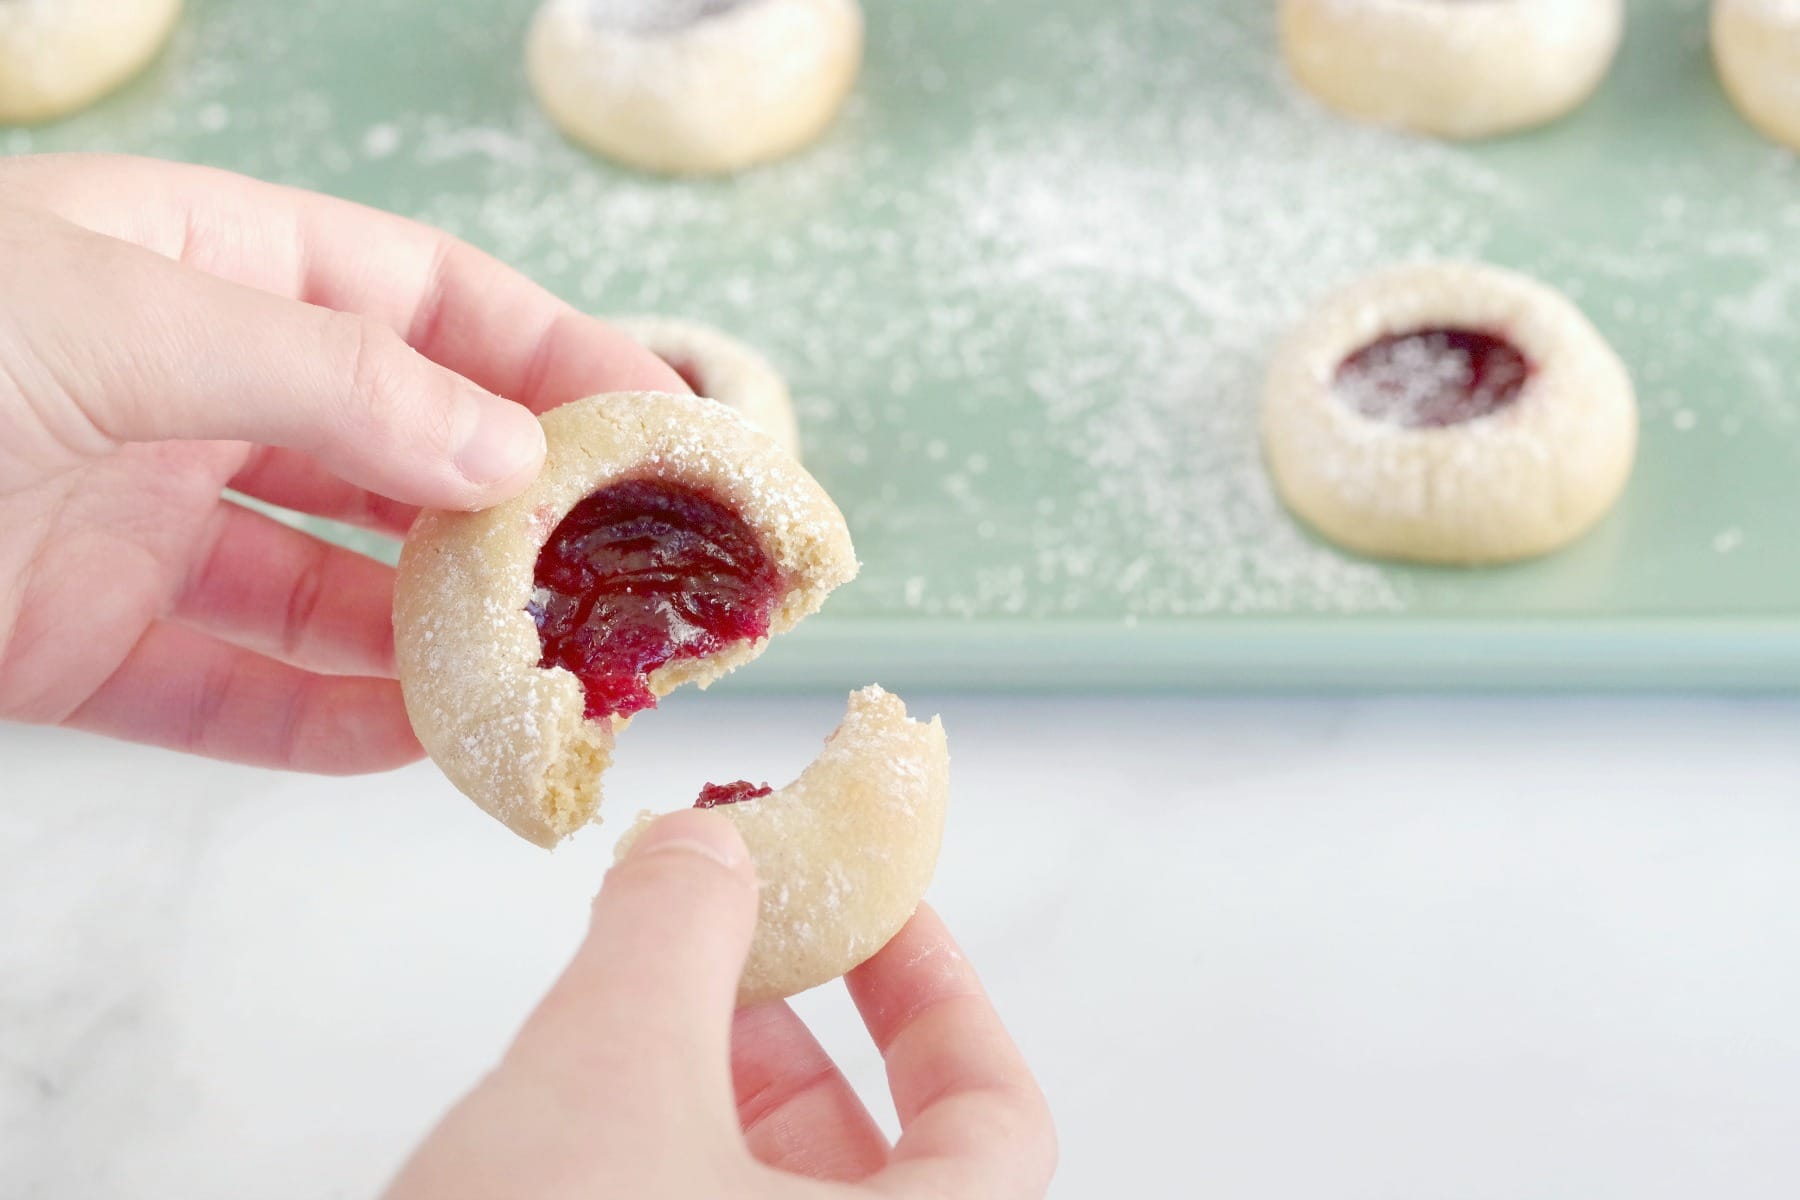 raspberry jam cookie being broken in half